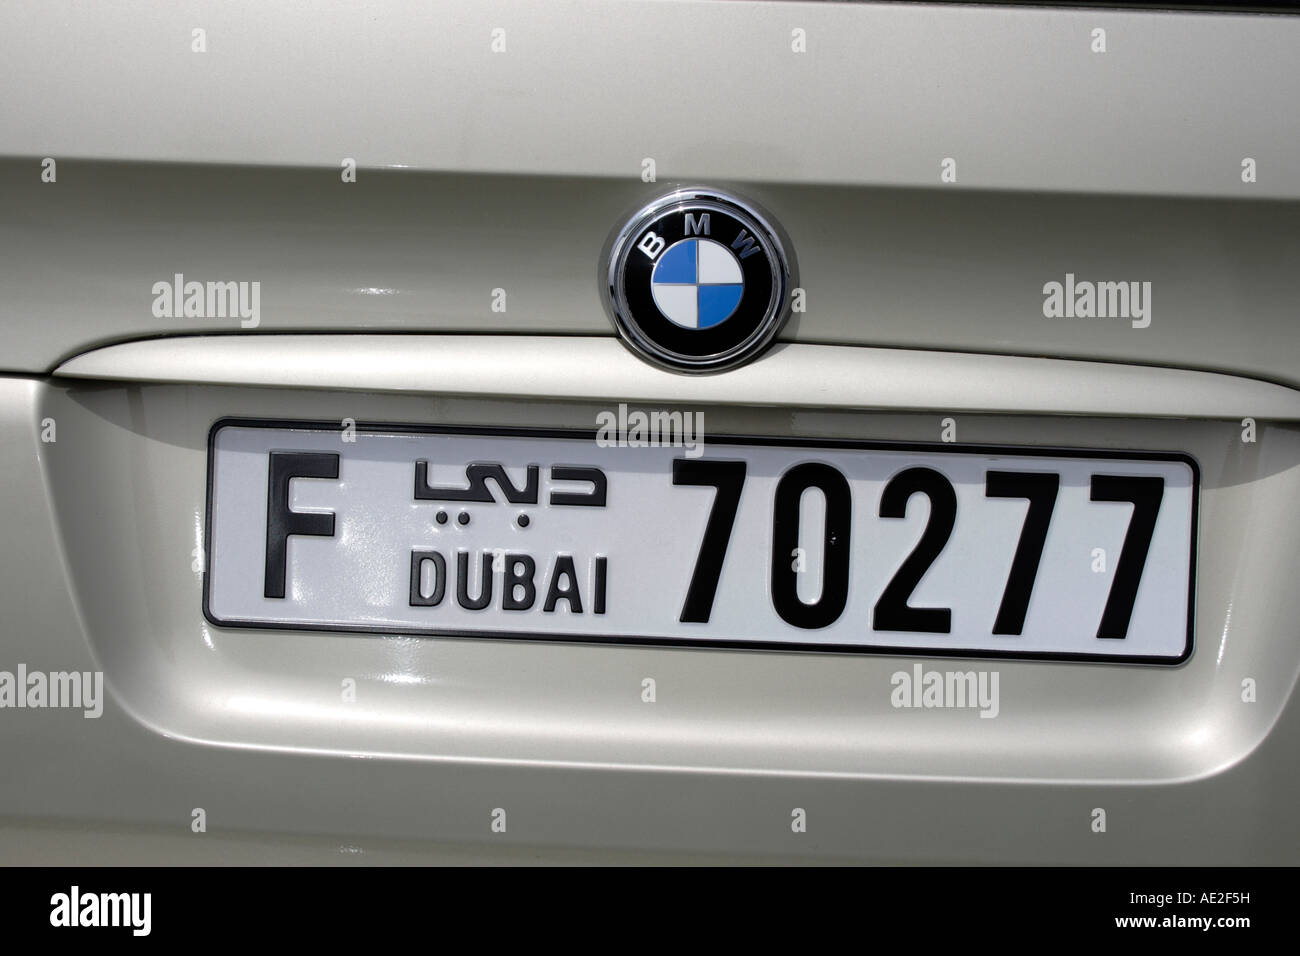 Licenza auto di una piastra di una BMW auto in Dubai Emirati Arabi Uniti. Foto di Willy Matheisl Foto Stock